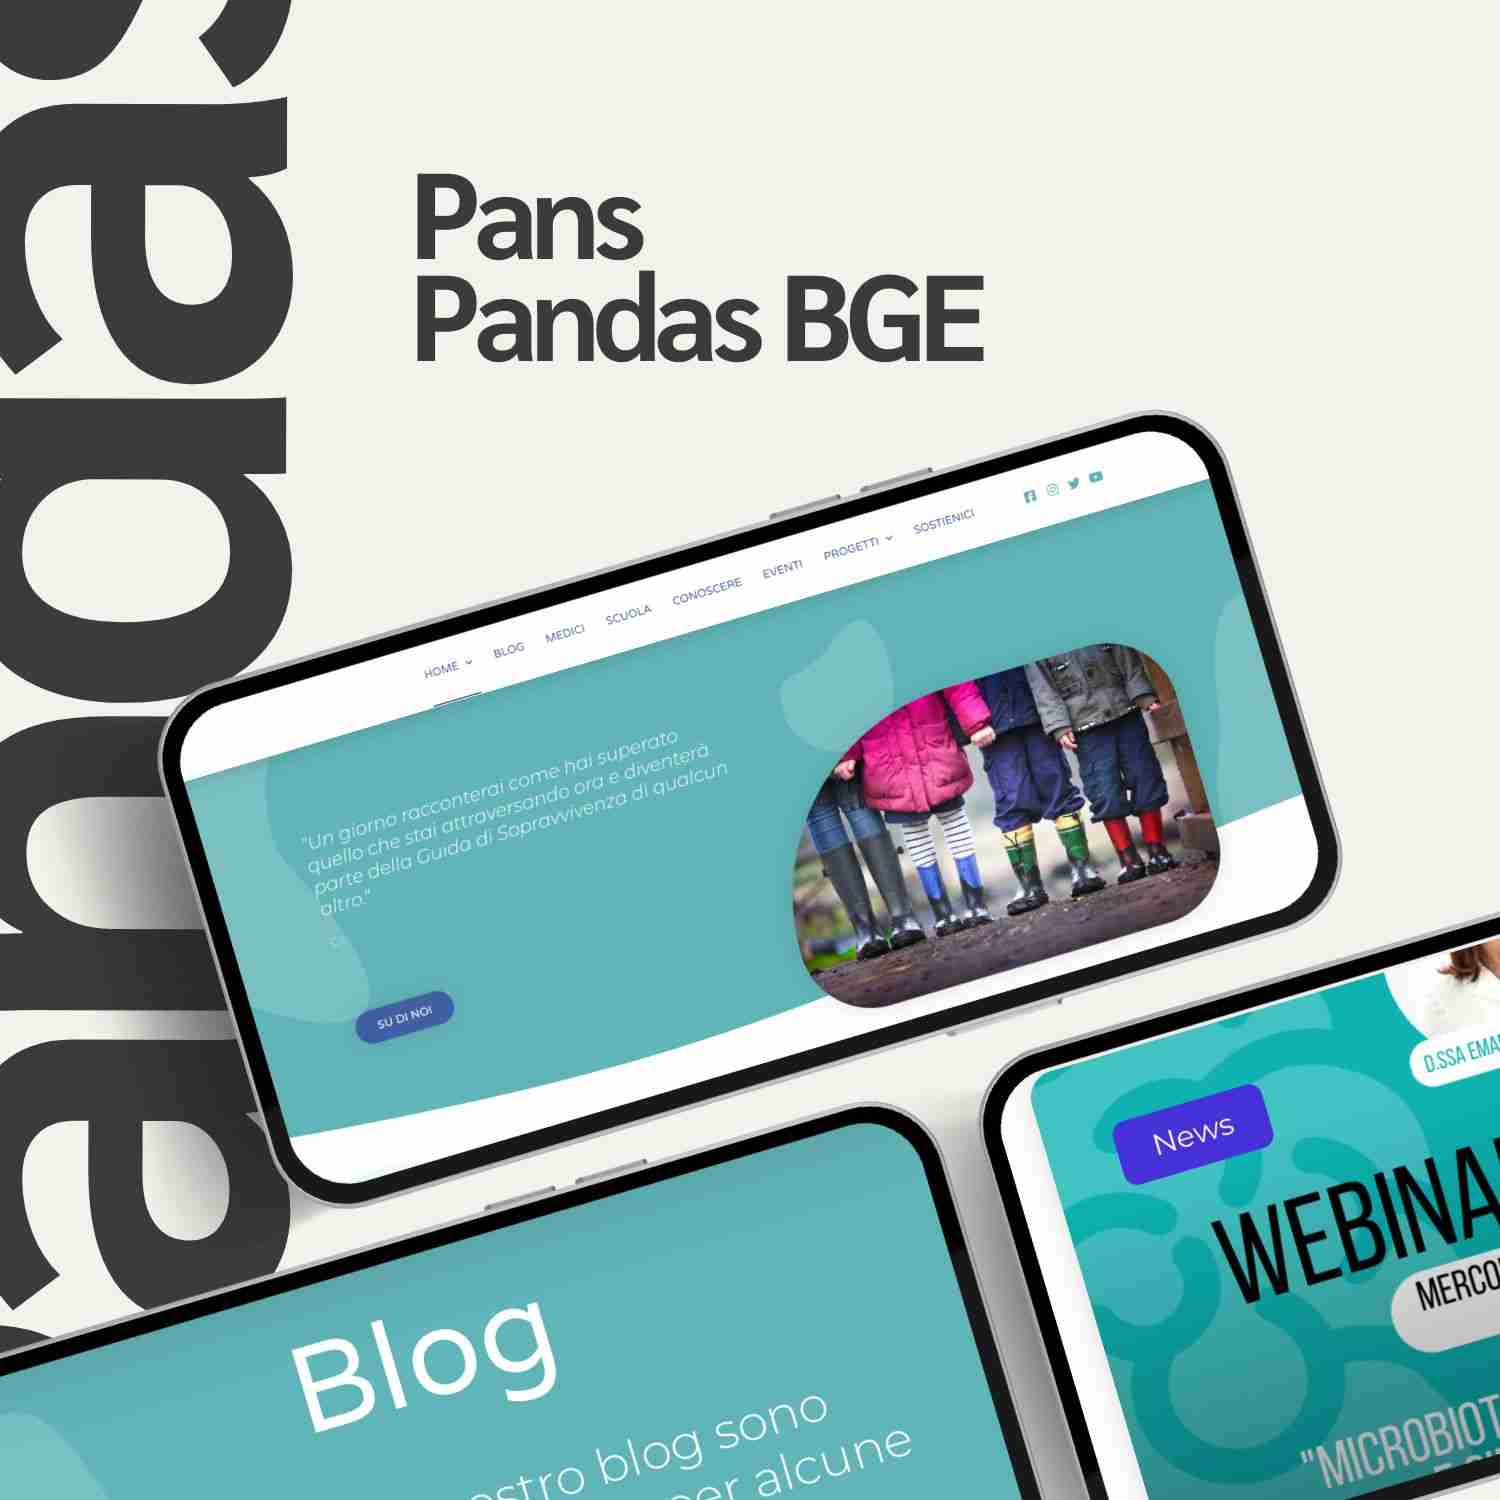 Pans Pandas BGE Associazione